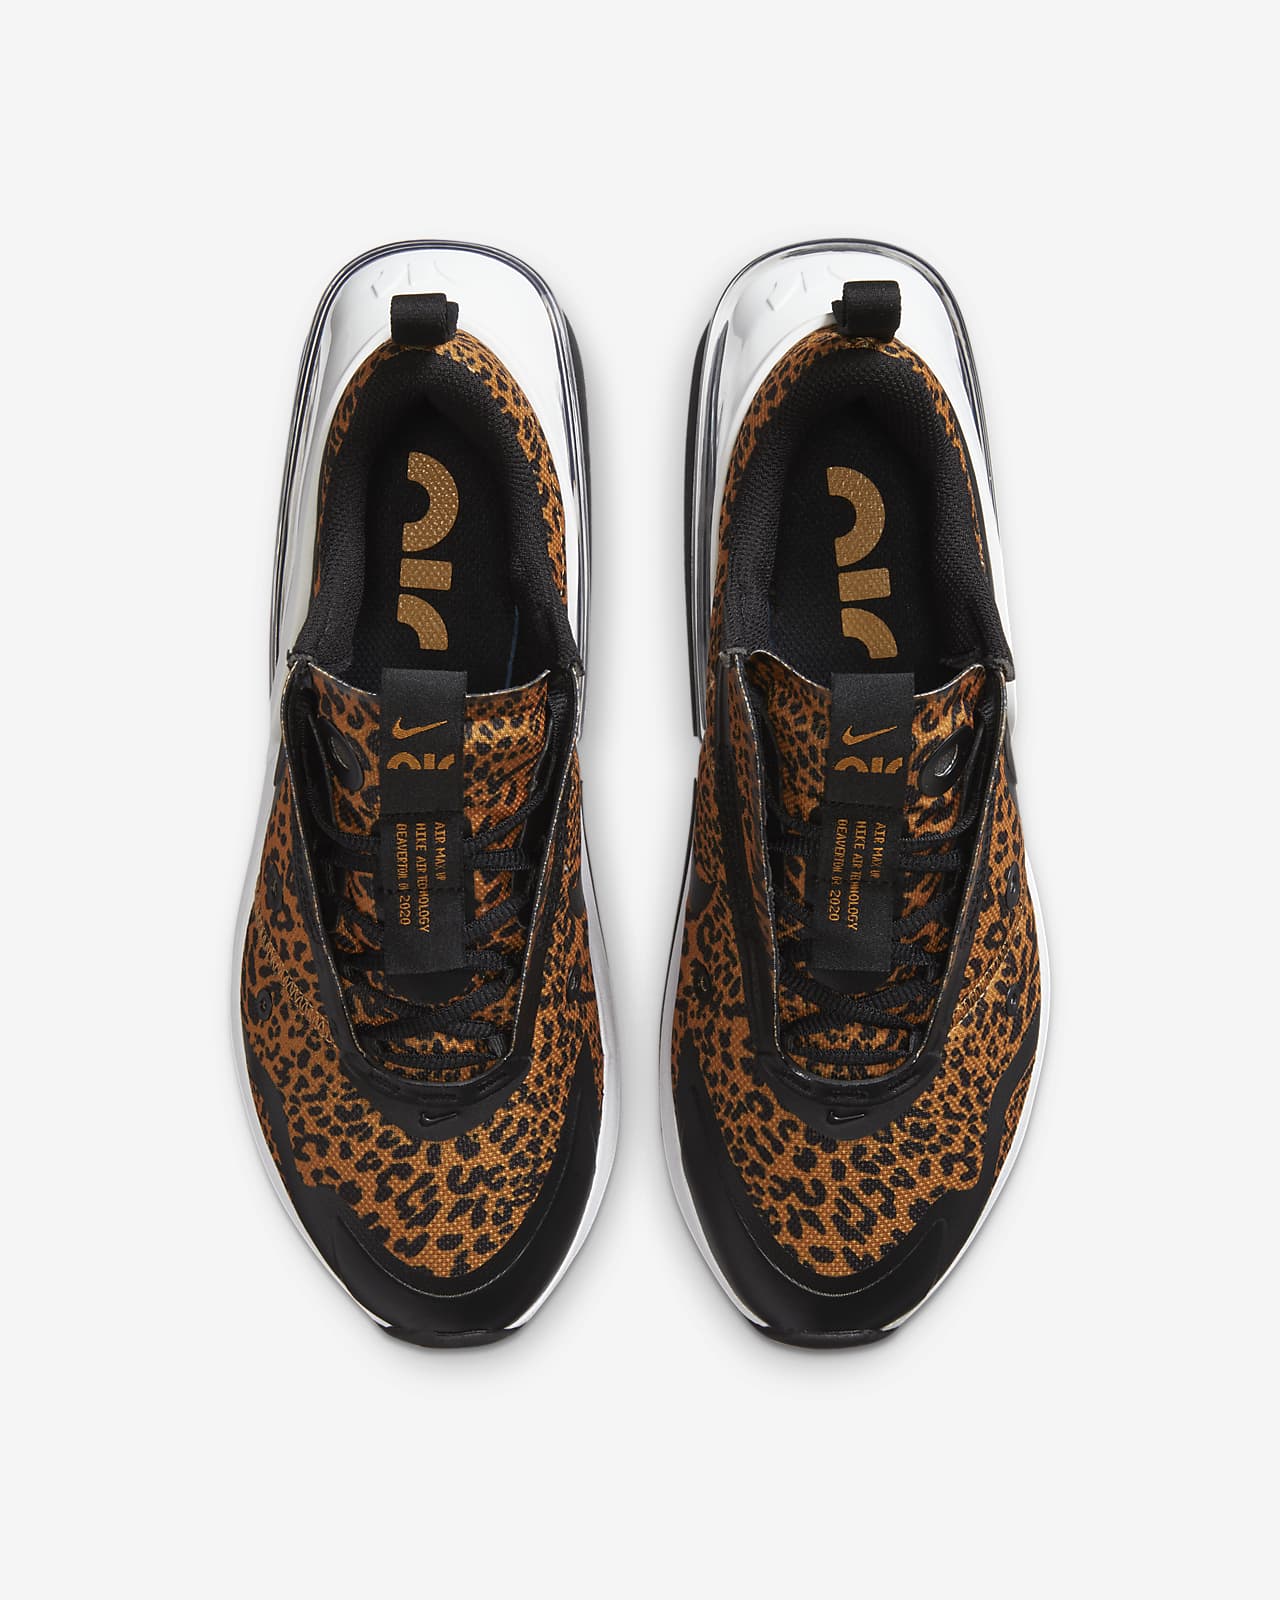 nike air max cheetah print shoes